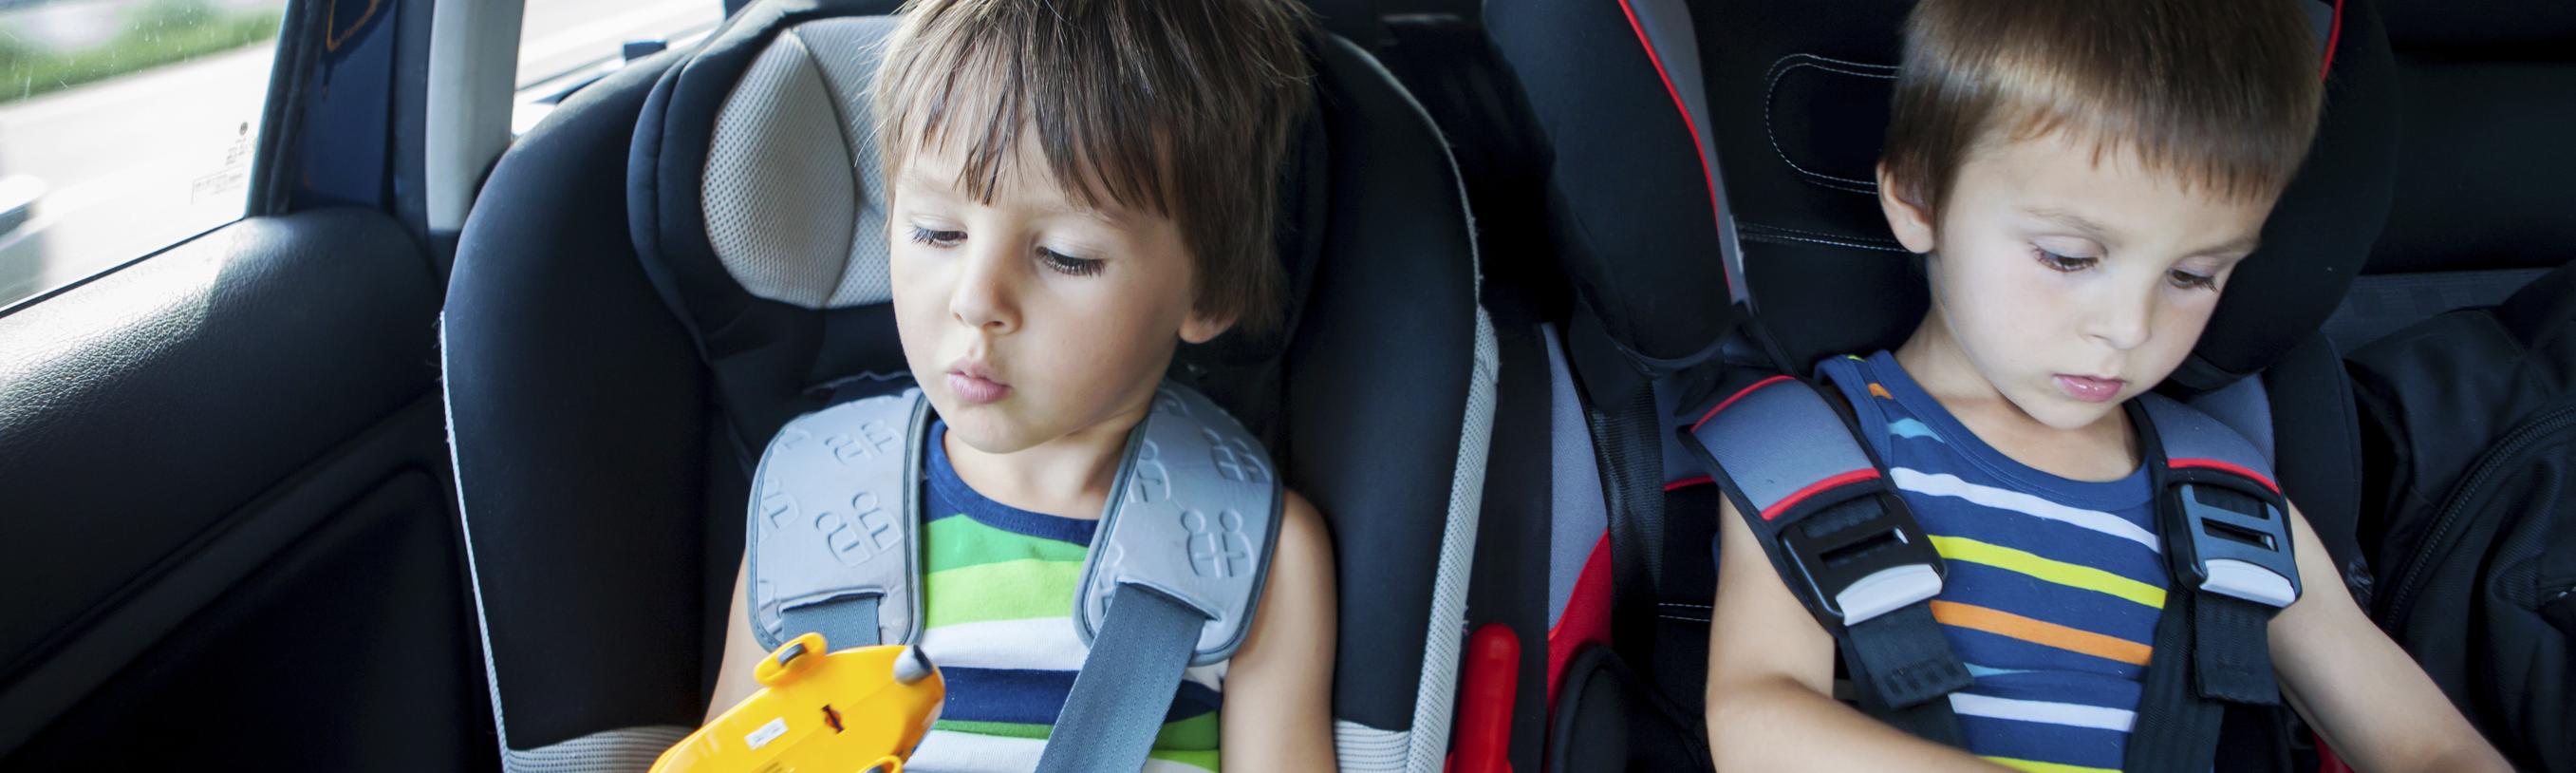 Longs trajets en voiture avec bébé et enfant: nos conseils